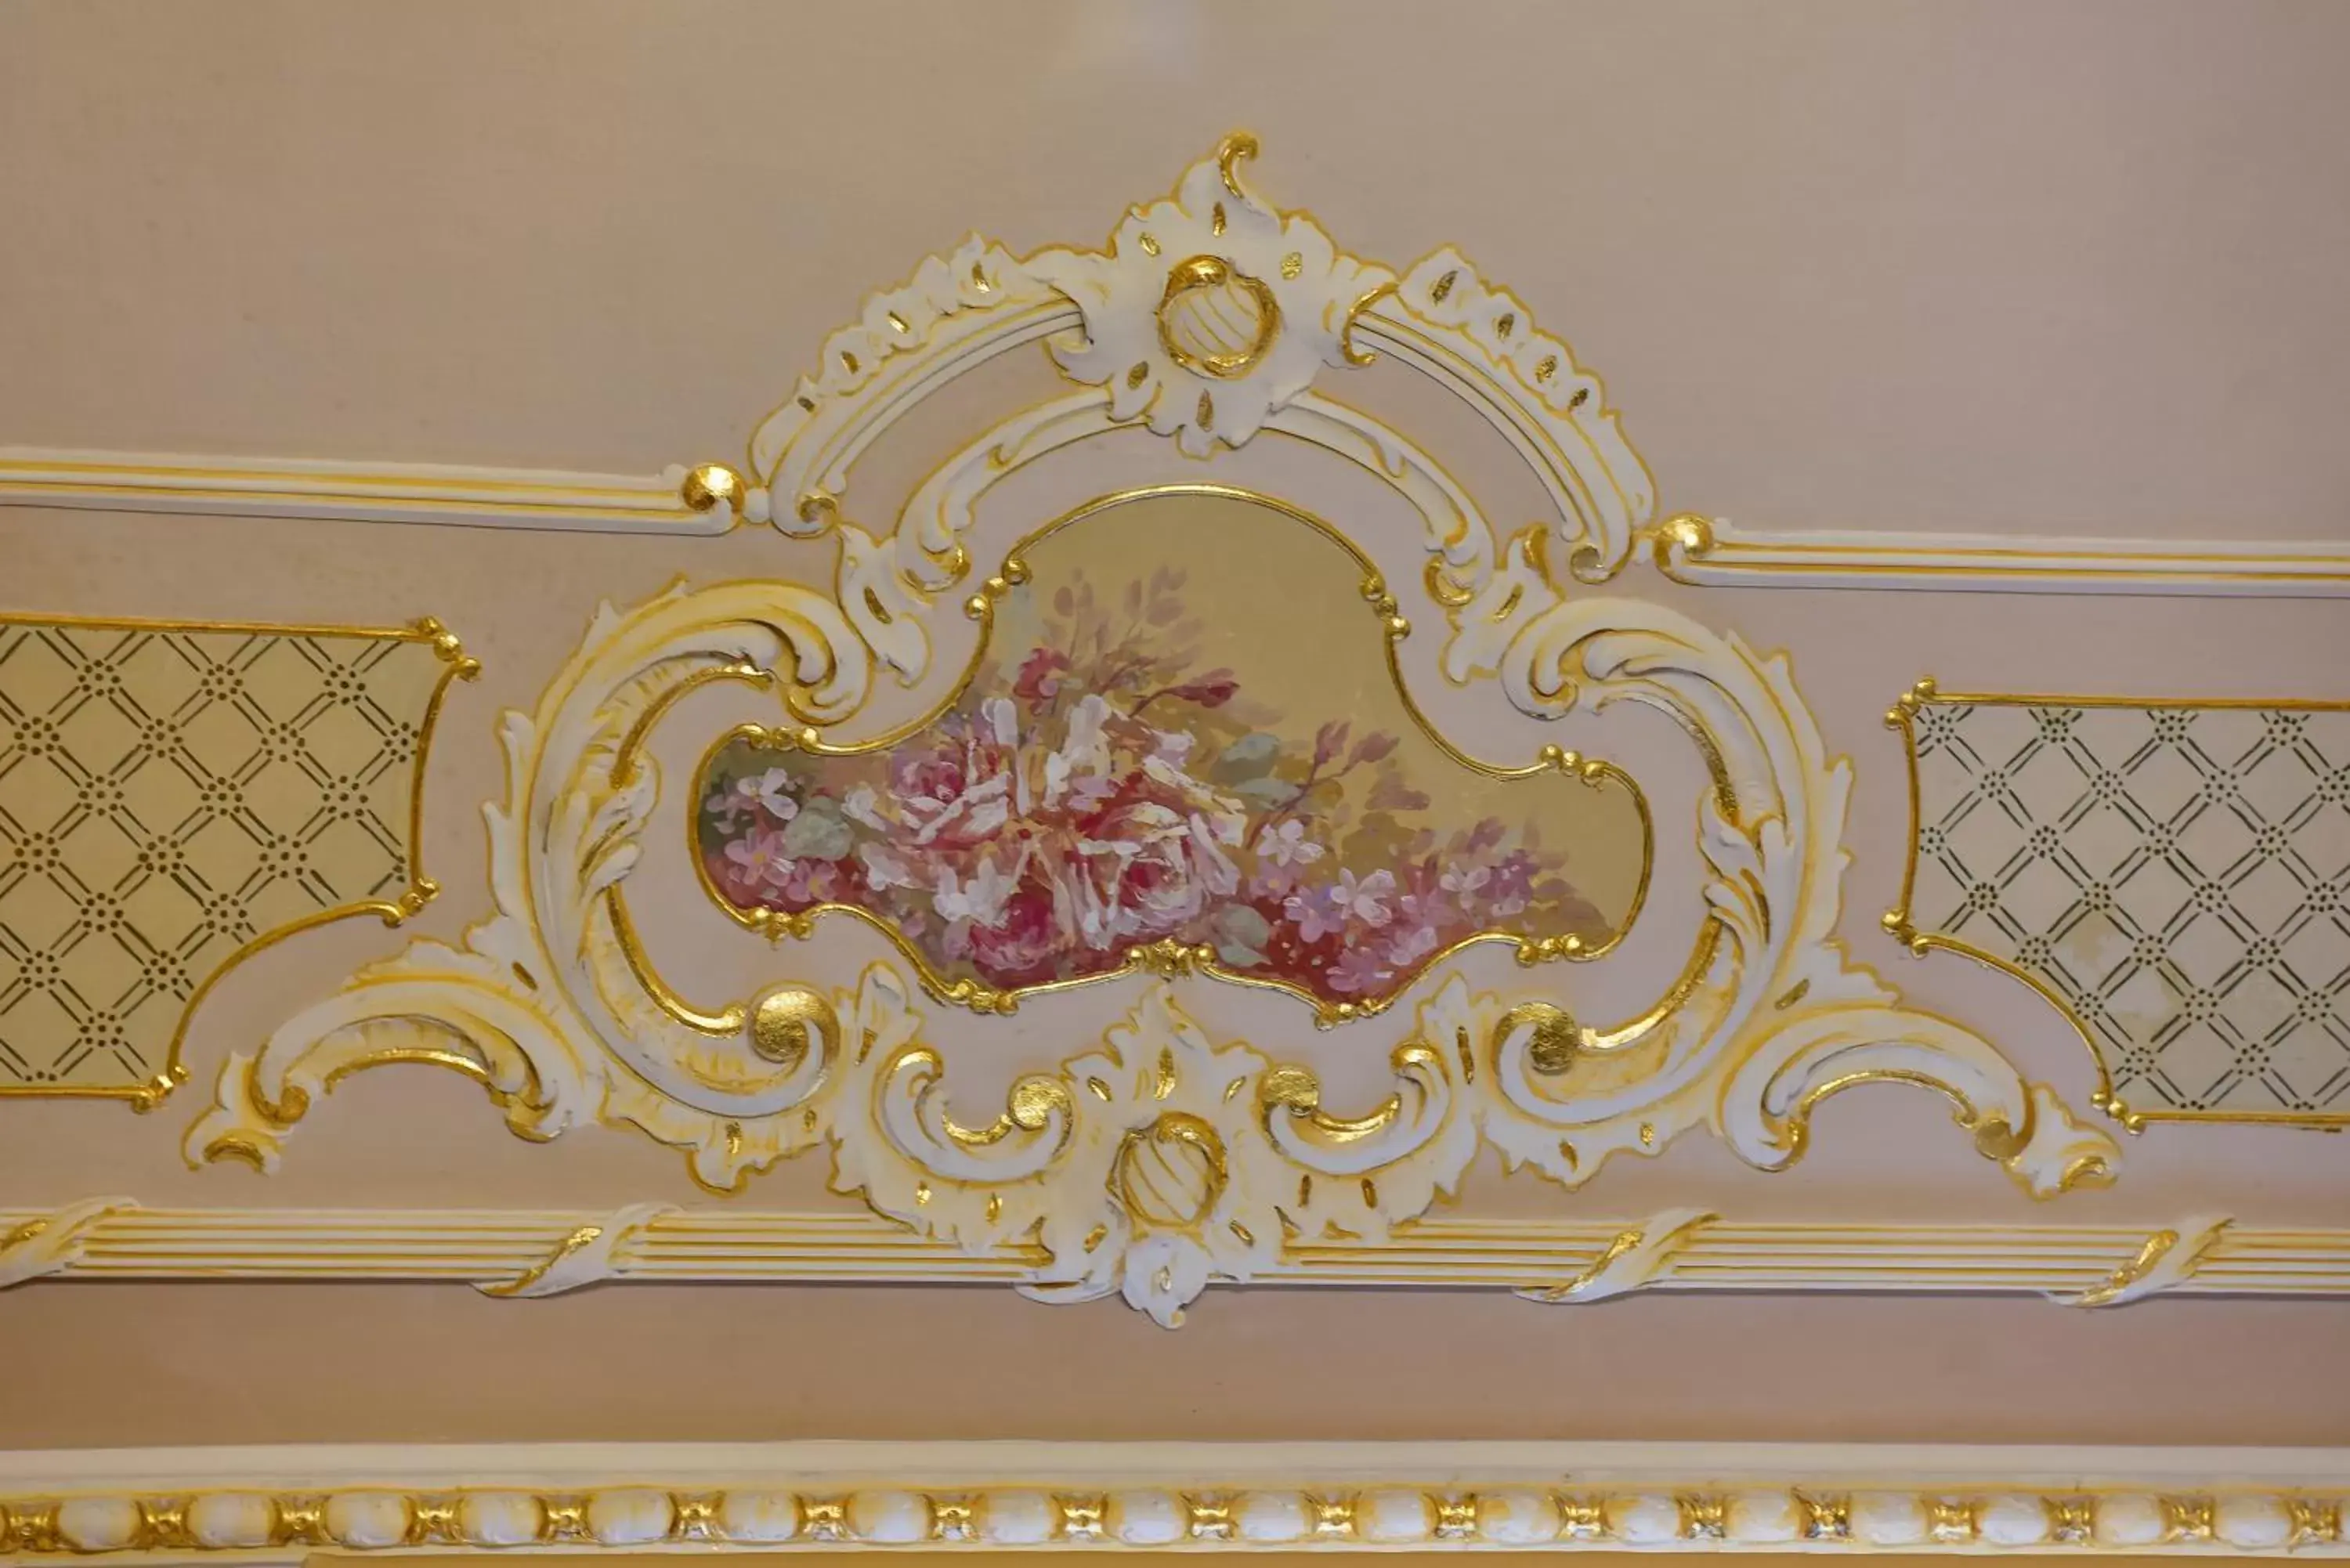 Decorative detail in Palazzo degli Affreschi